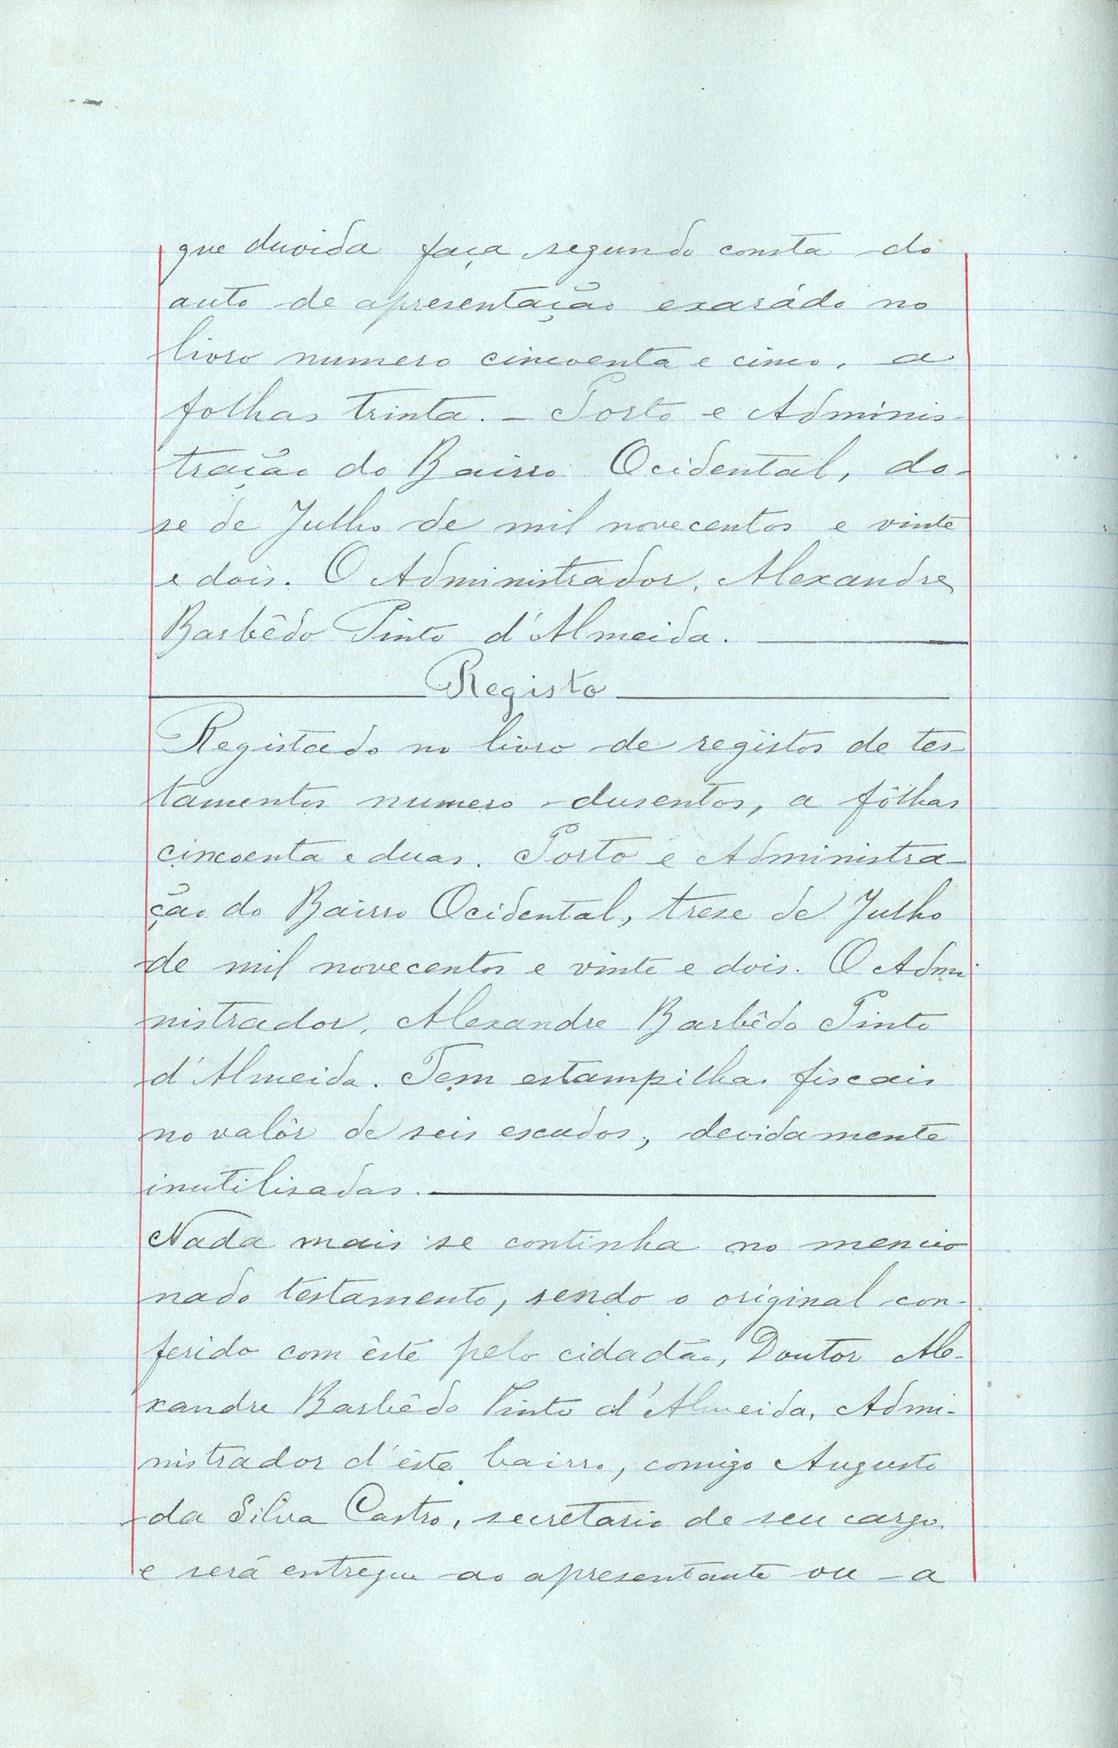 Registo do testamento com que faleceu Adelaide Amélia Martins Miranda de Oliveira, proprietária, casada com César Augusto de Oliveira